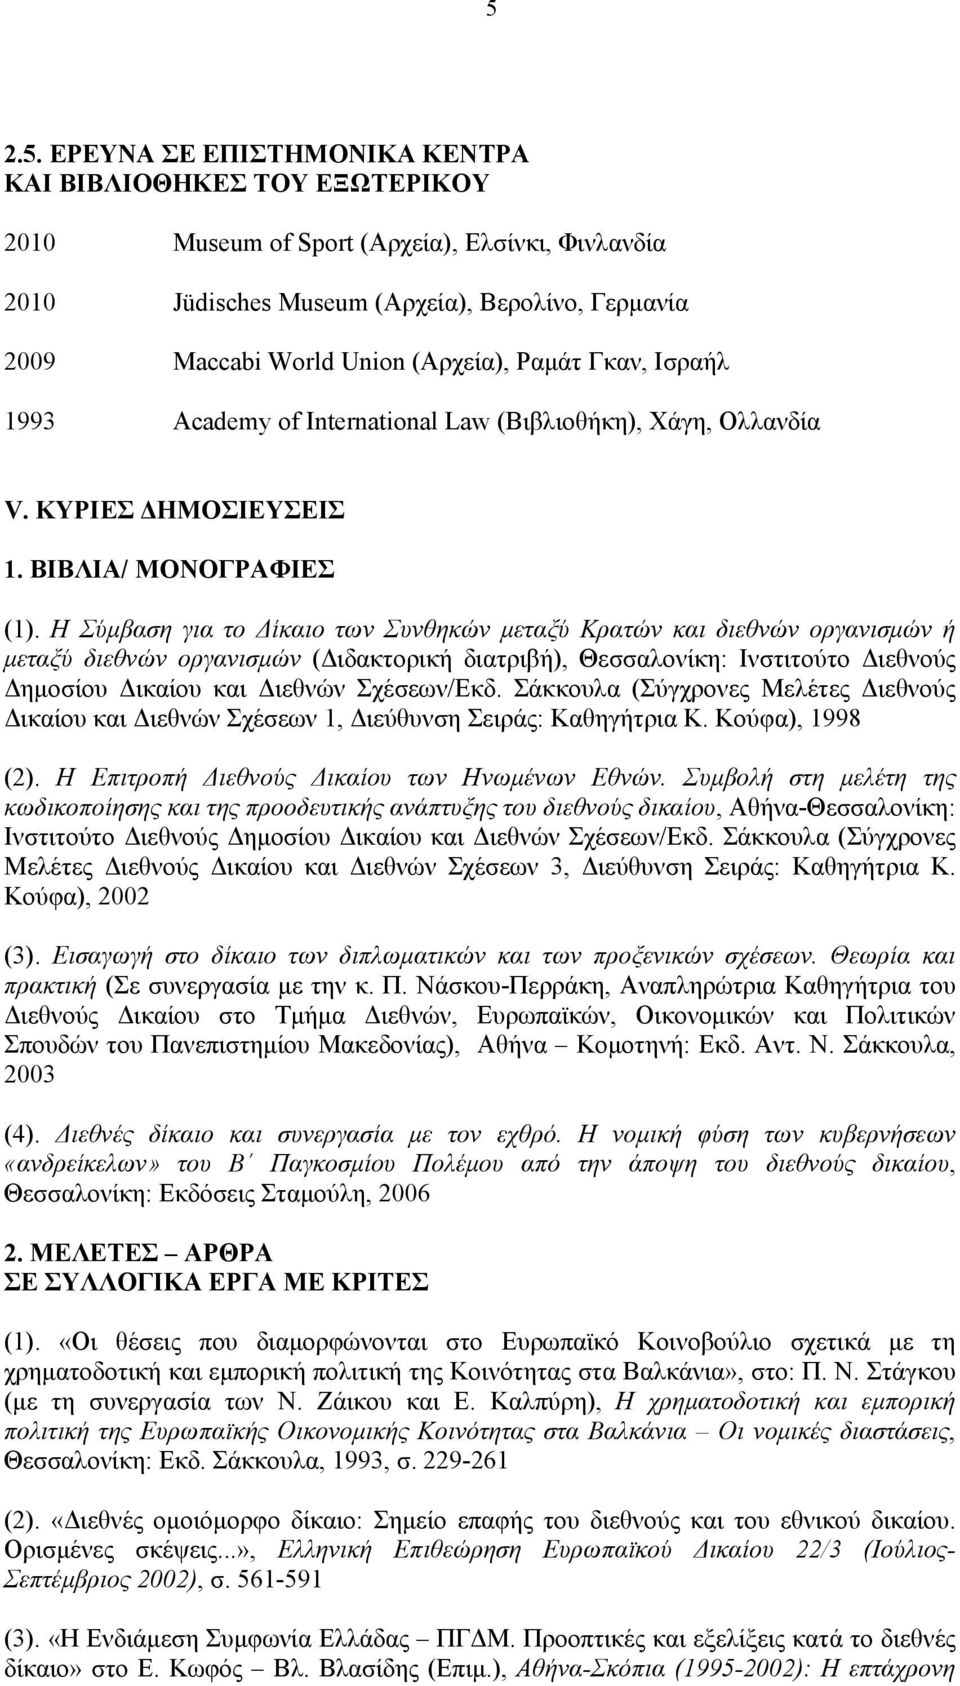 Η Σύμβαση για το Δίκαιο των Συνθηκών μεταξύ Κρατών και διεθνών οργανισμών ή μεταξύ διεθνών οργανισμών (Διδακτορική διατριβή), Θεσσαλονίκη: Ινστιτούτο Διεθνούς Δημοσίου Δικαίου και Διεθνών Σχέσεων/Εκδ.